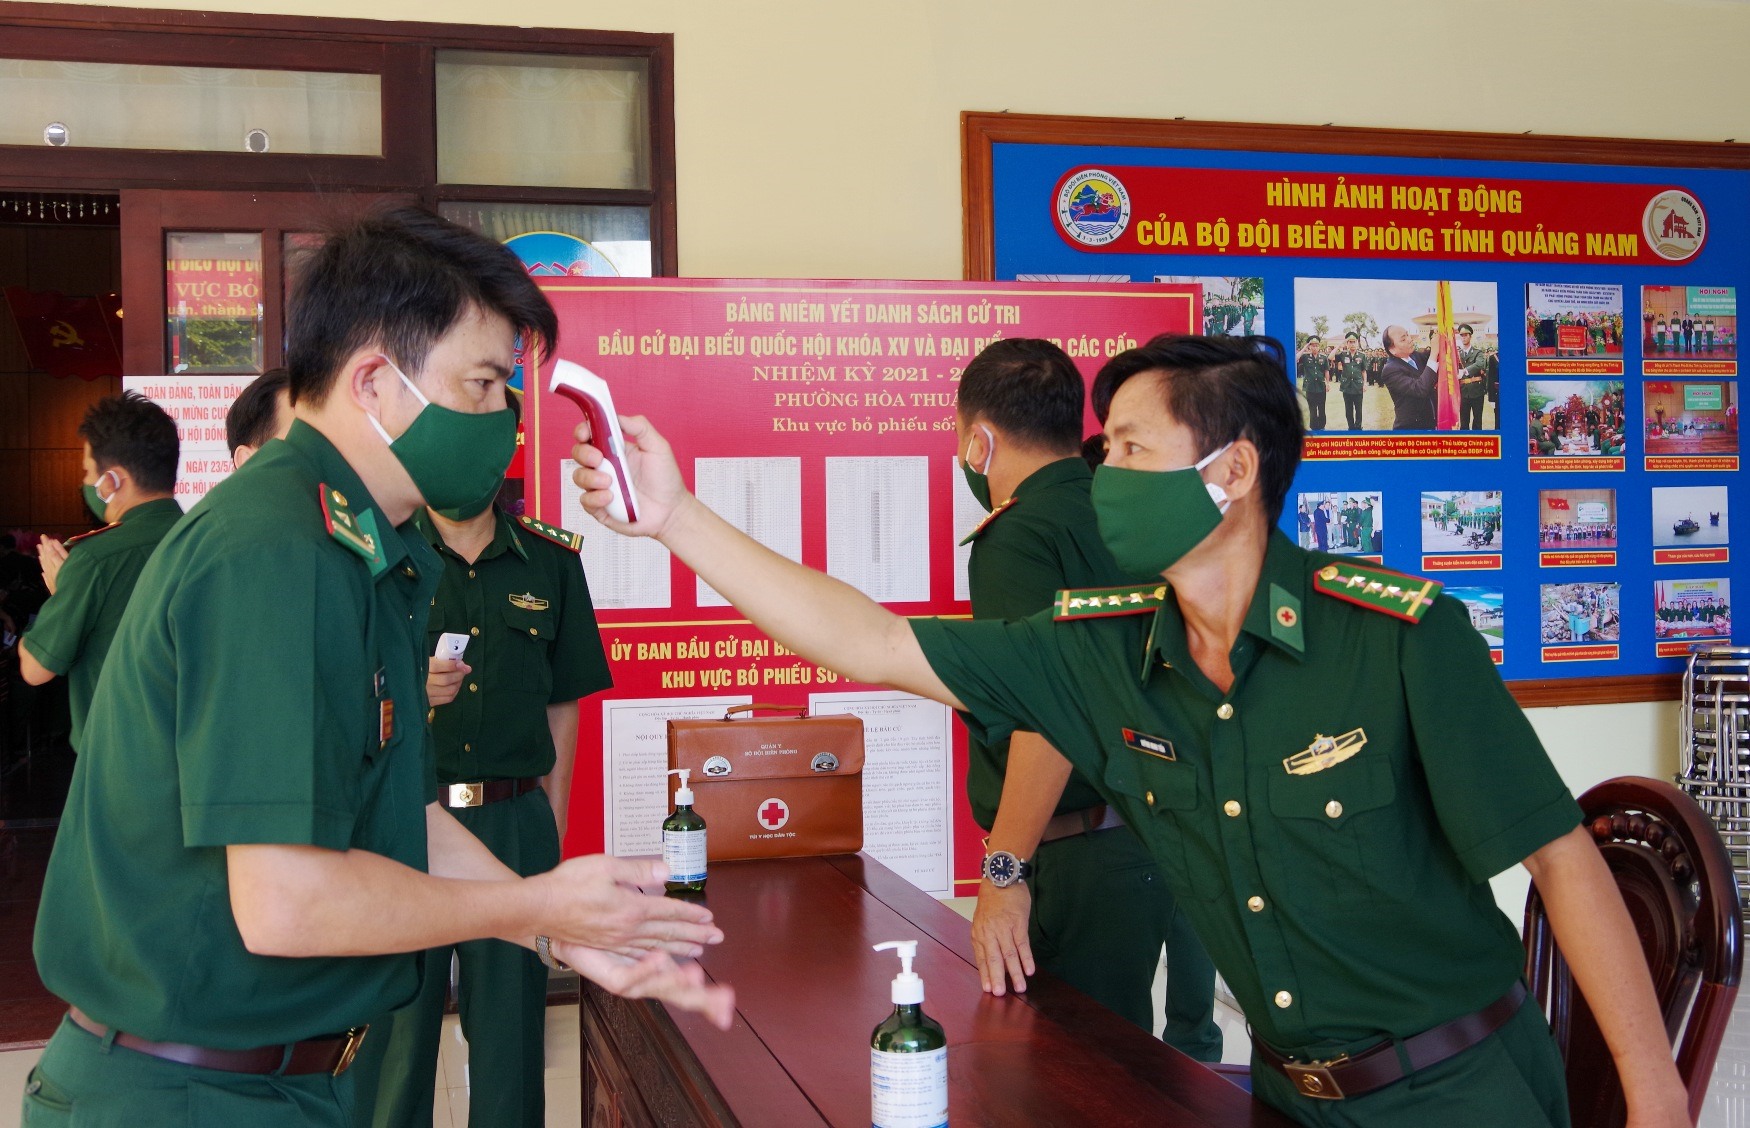 Các cán bộ đang công tác tại Bộ Chỉ huy Bộ đội Biên phòng tỉnh tập trung về khu vực bỏ phiếu số 12 (phường Hòa Thuận, TP. Tam Kỳ) để bỏ phiếu.